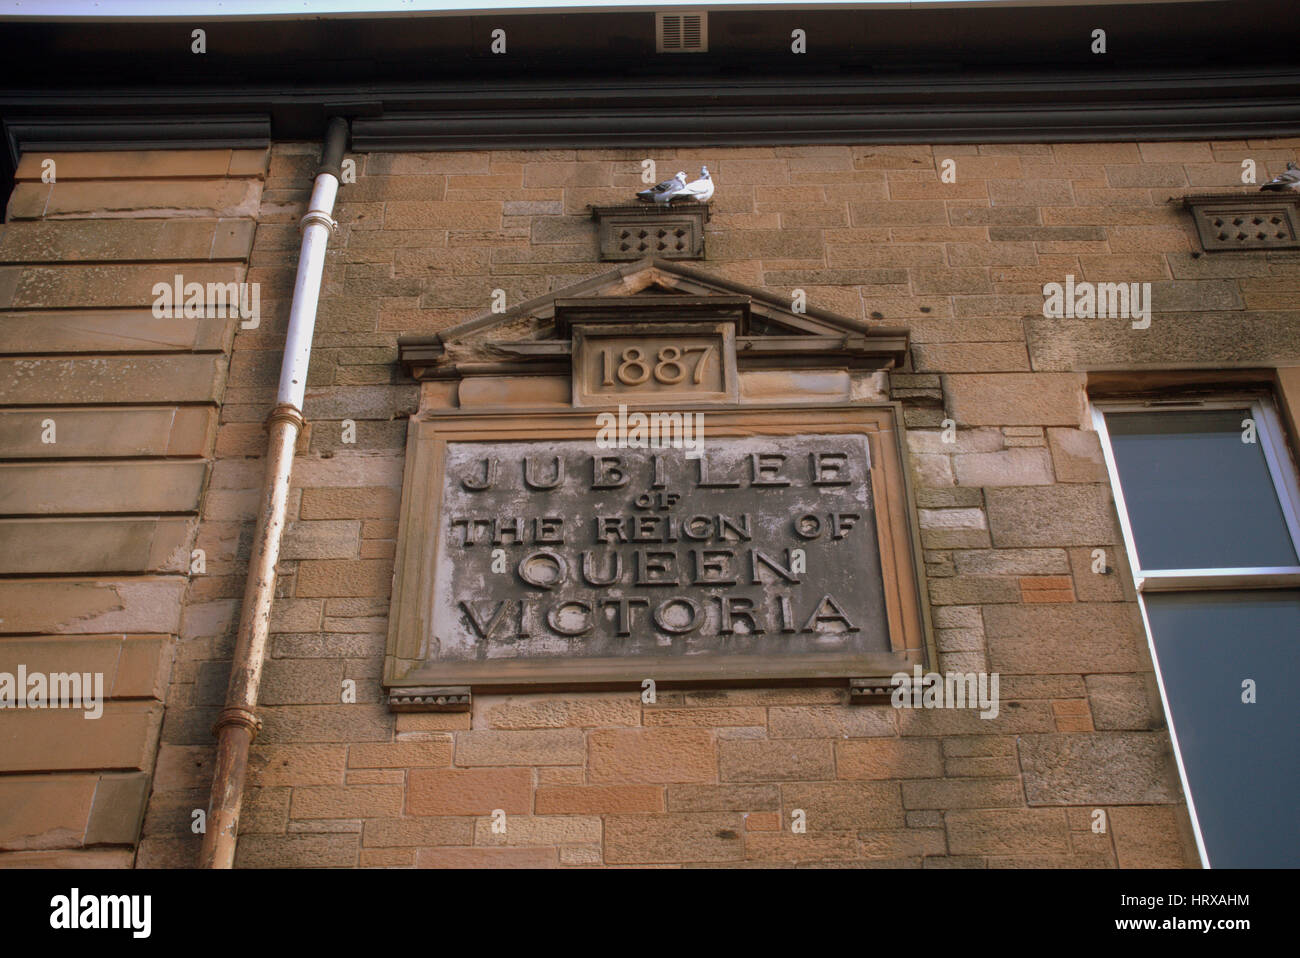 queen Victoria jubilee sign olf victorian  school sandstone sign Stock Photo